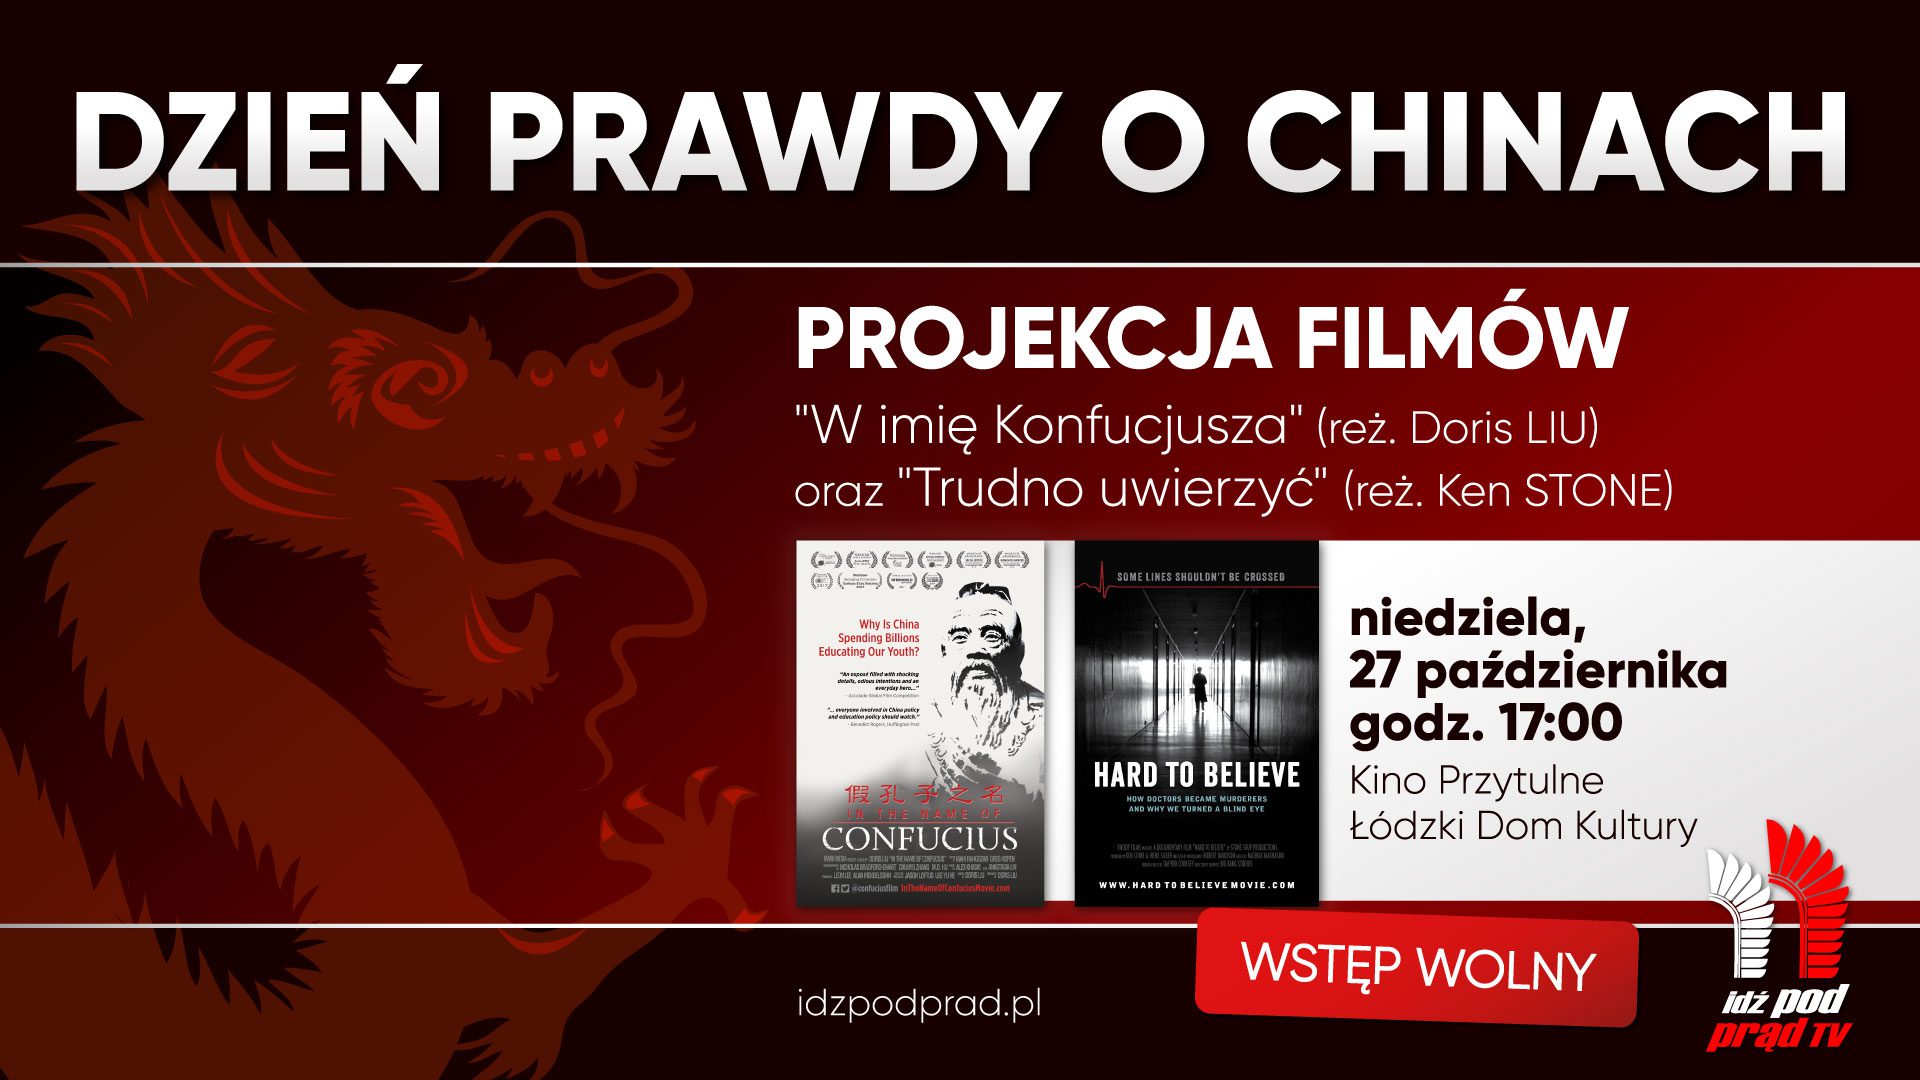 27.10.2019, Łódź: Dzień Prawdy o Chinach – bezpłatna projekcja filmów